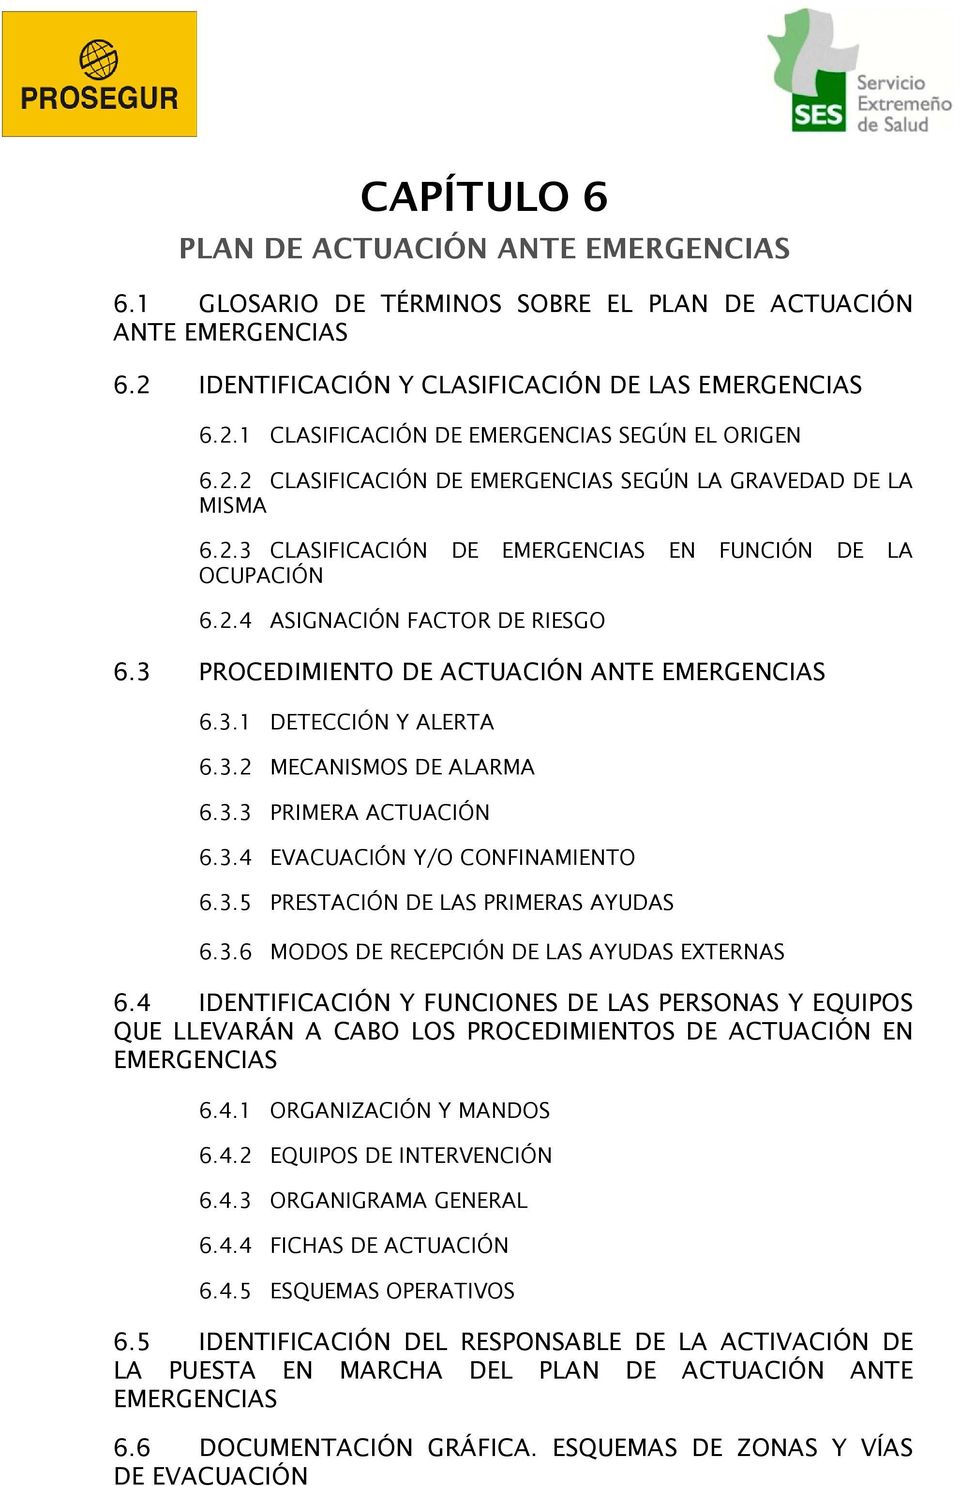 3 PROCEDIMIENTO DE ACTUACIÓN ANTE EMERGENCIAS 6.3.1 DETECCIÓN Y ALERTA 6.3.2 MECANISMOS DE ALARMA 6.3.3 PRIMERA ACTUACIÓN 6.3.4 EVACUACIÓN Y/O CONFINAMIENTO 6.3.5 PRESTACIÓN DE LAS PRIMERAS AYUDAS 6.